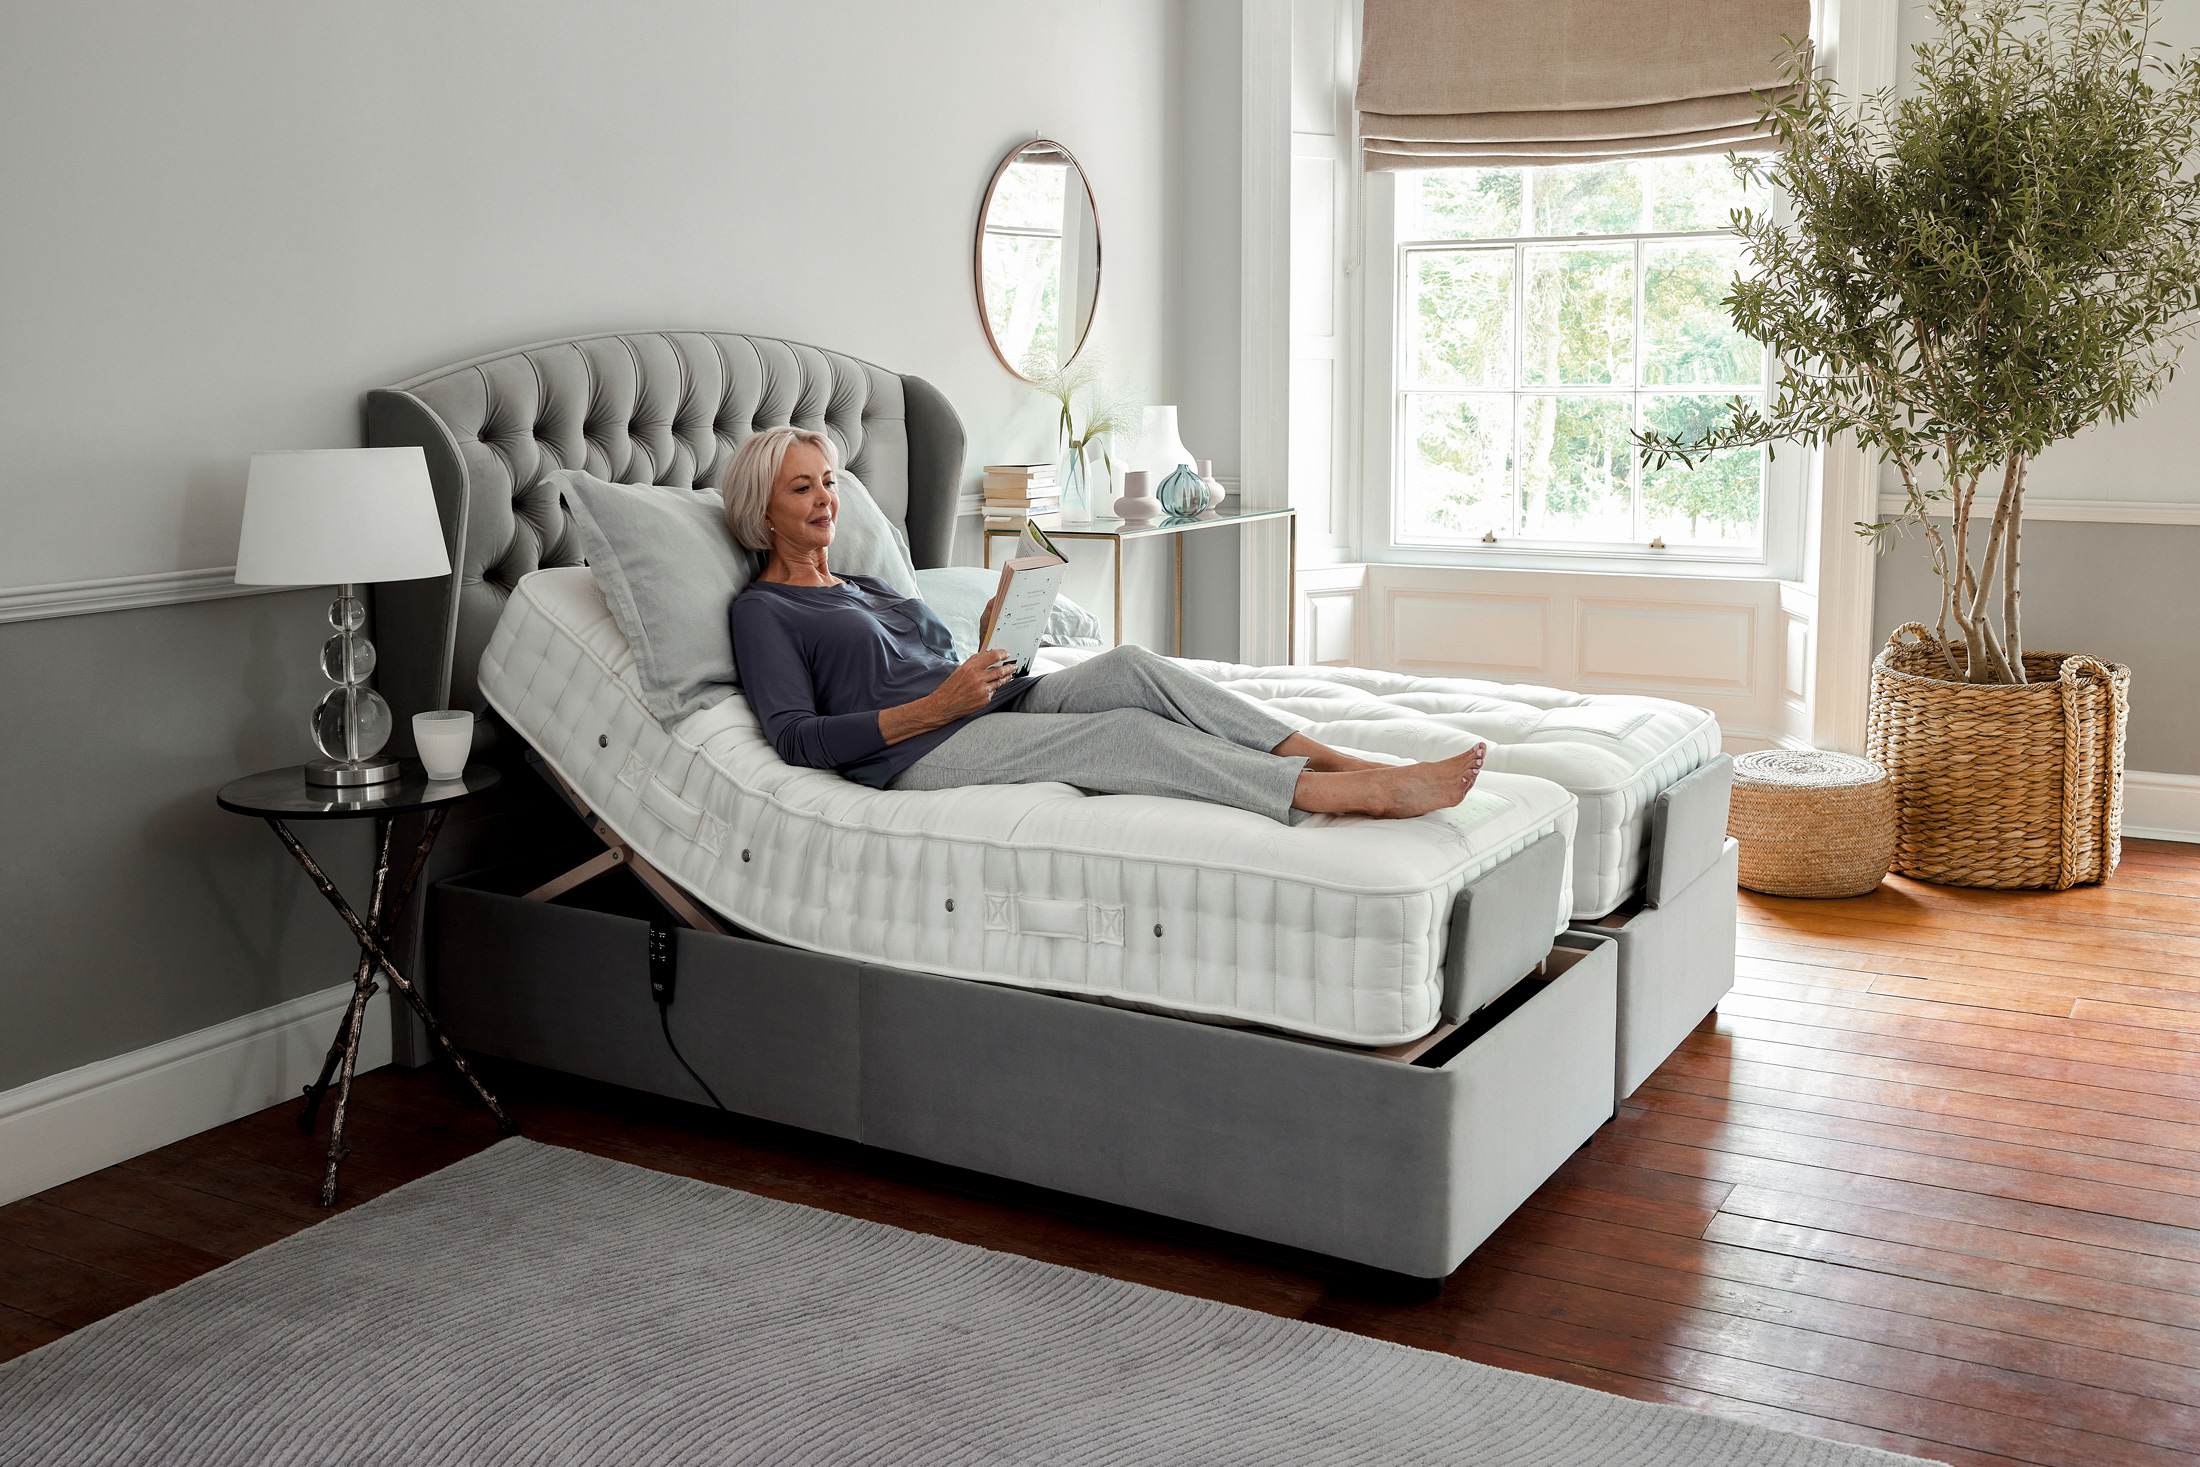 5ft Adjustable Beds, King Size Electric Adjustable Beds